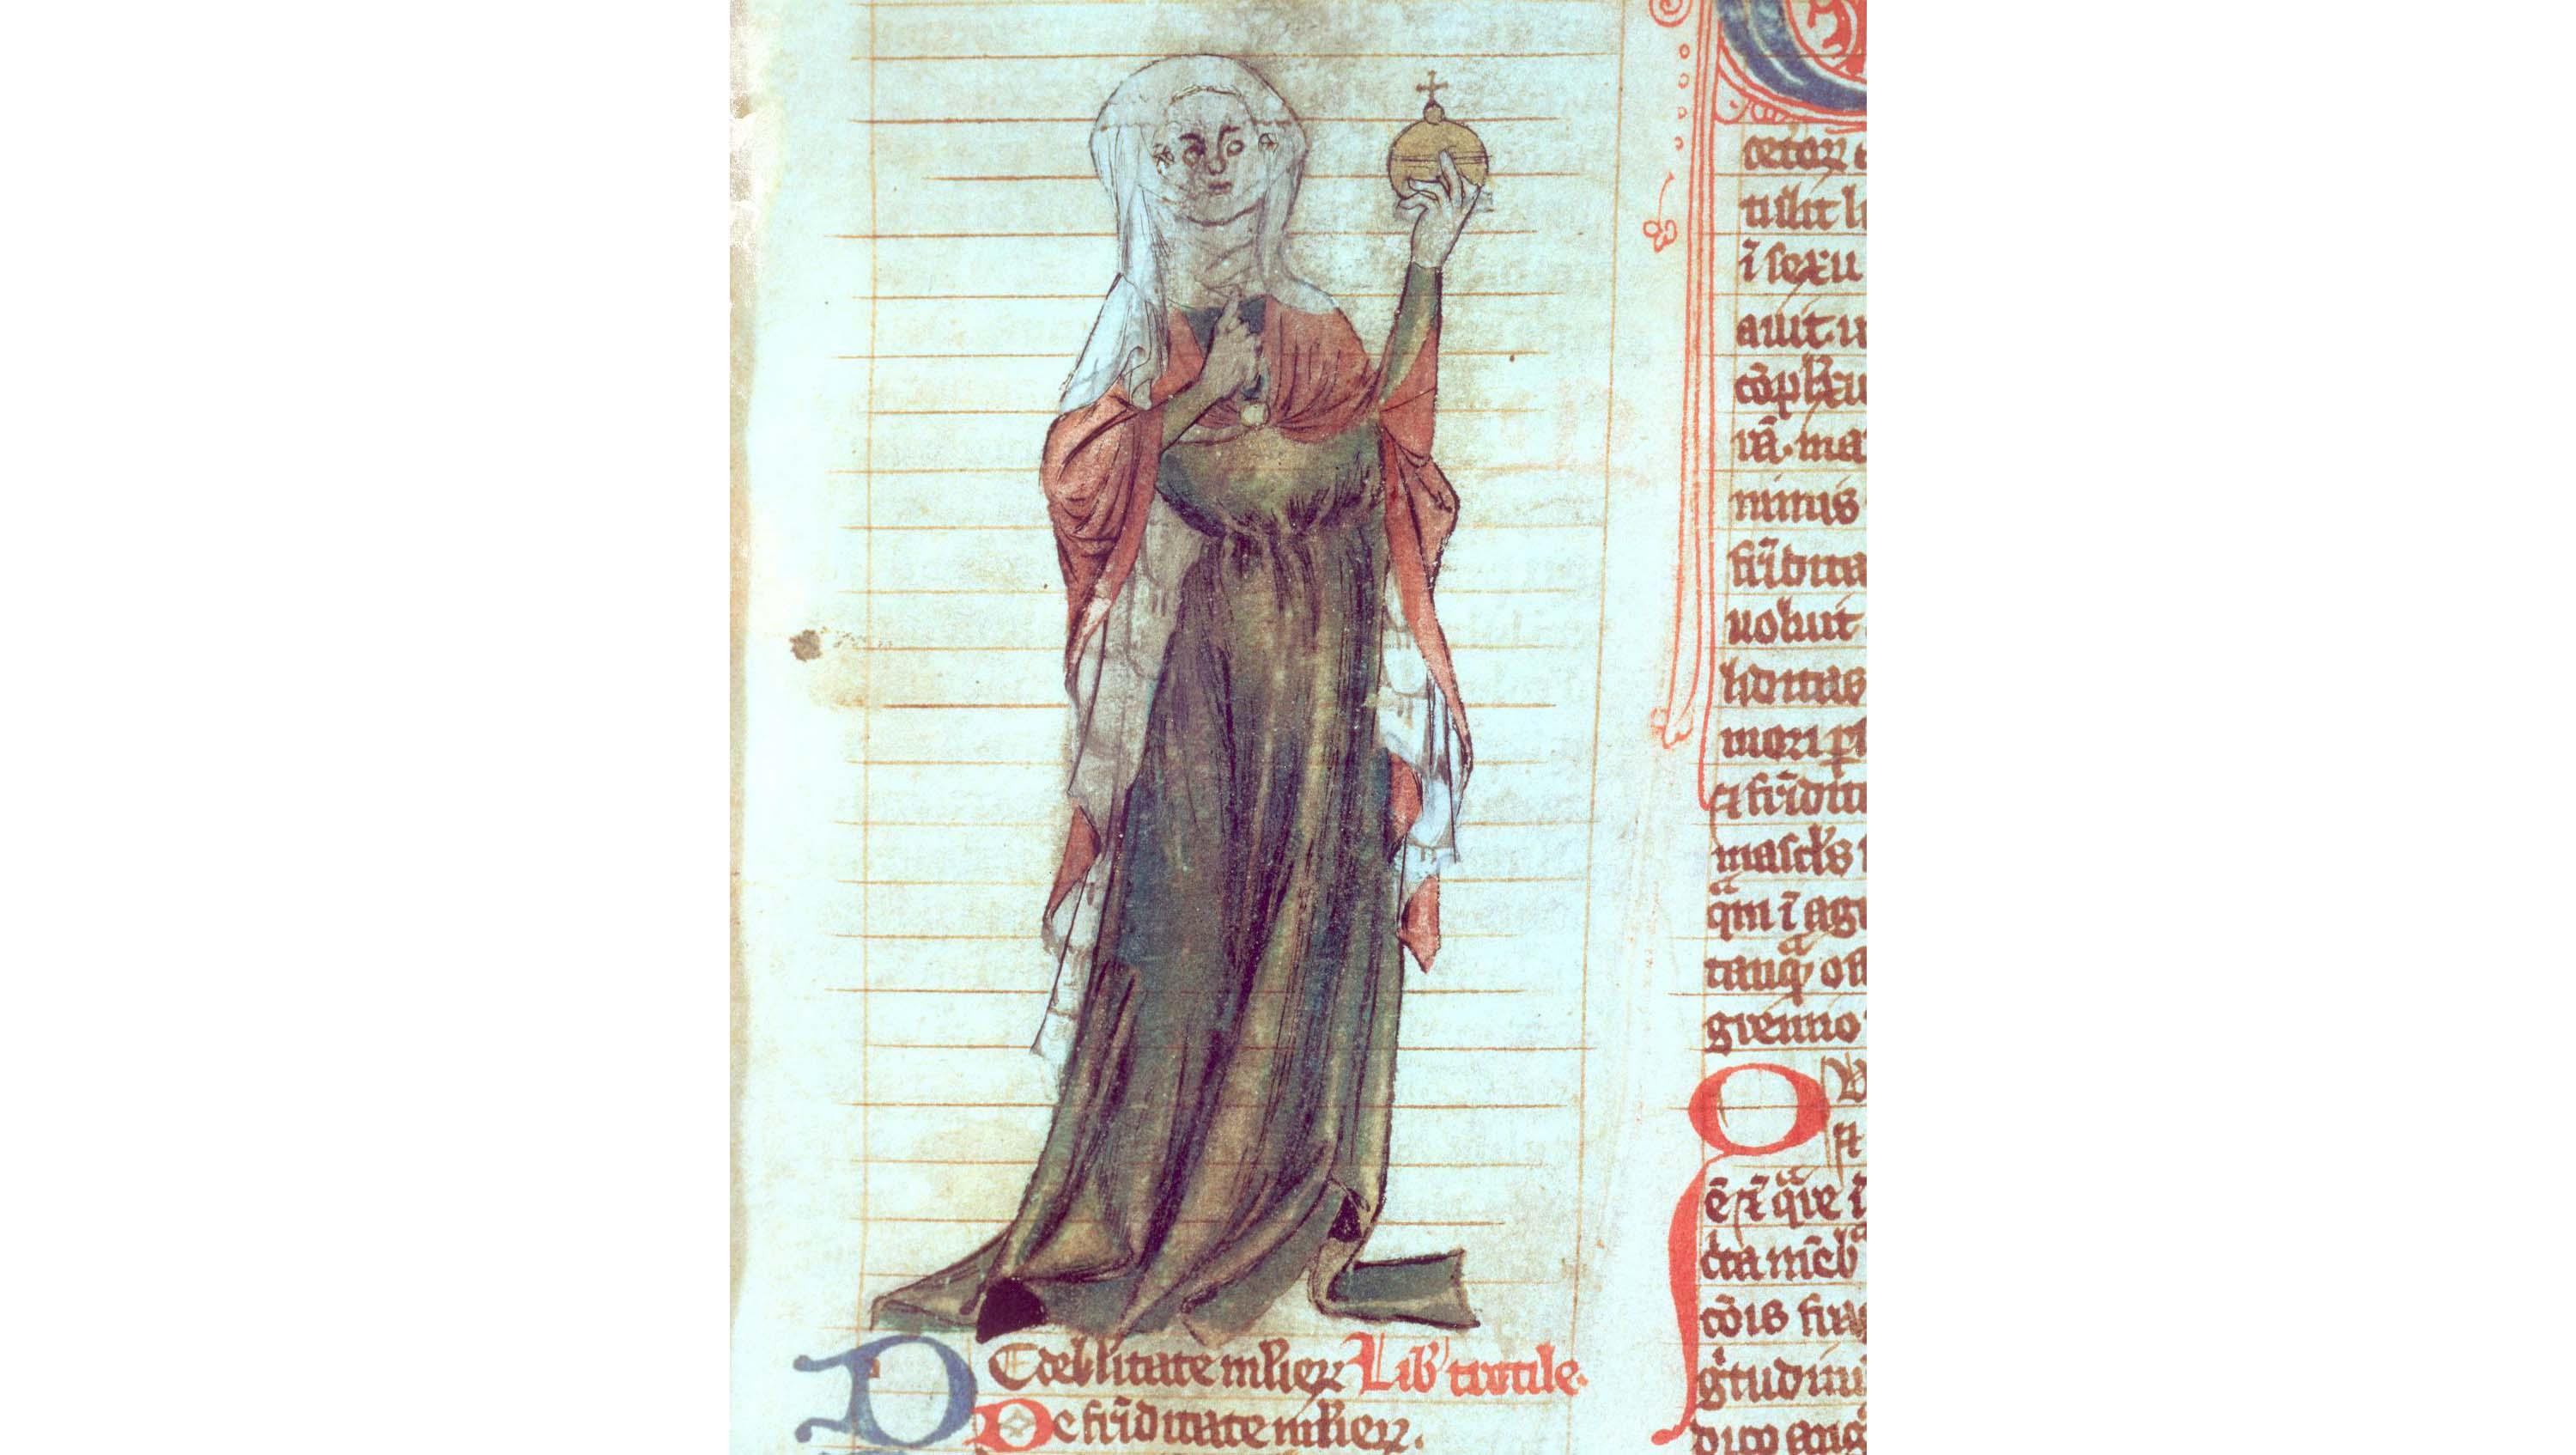 Trota af Salerno. Illustration fra middelalderligt håndskrift.